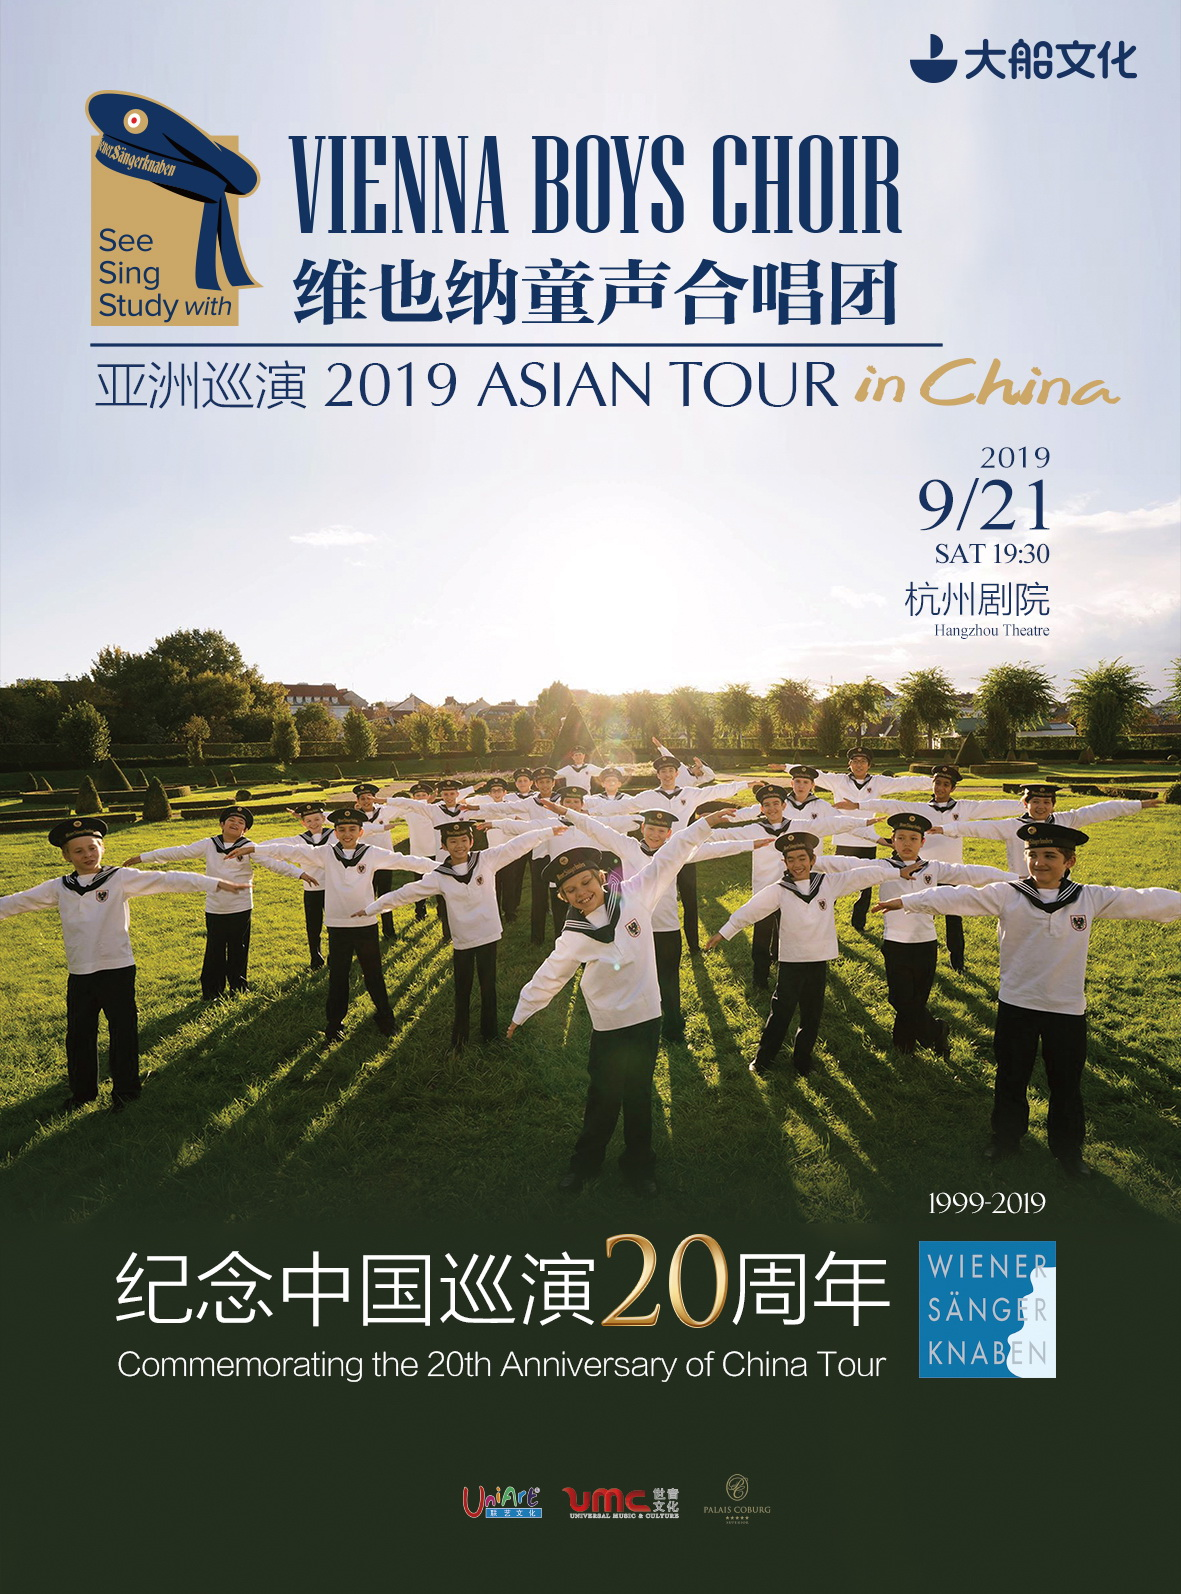 大船文化•纪念中国巡演20周年 维也纳童声合唱团亚洲巡演 杭州站